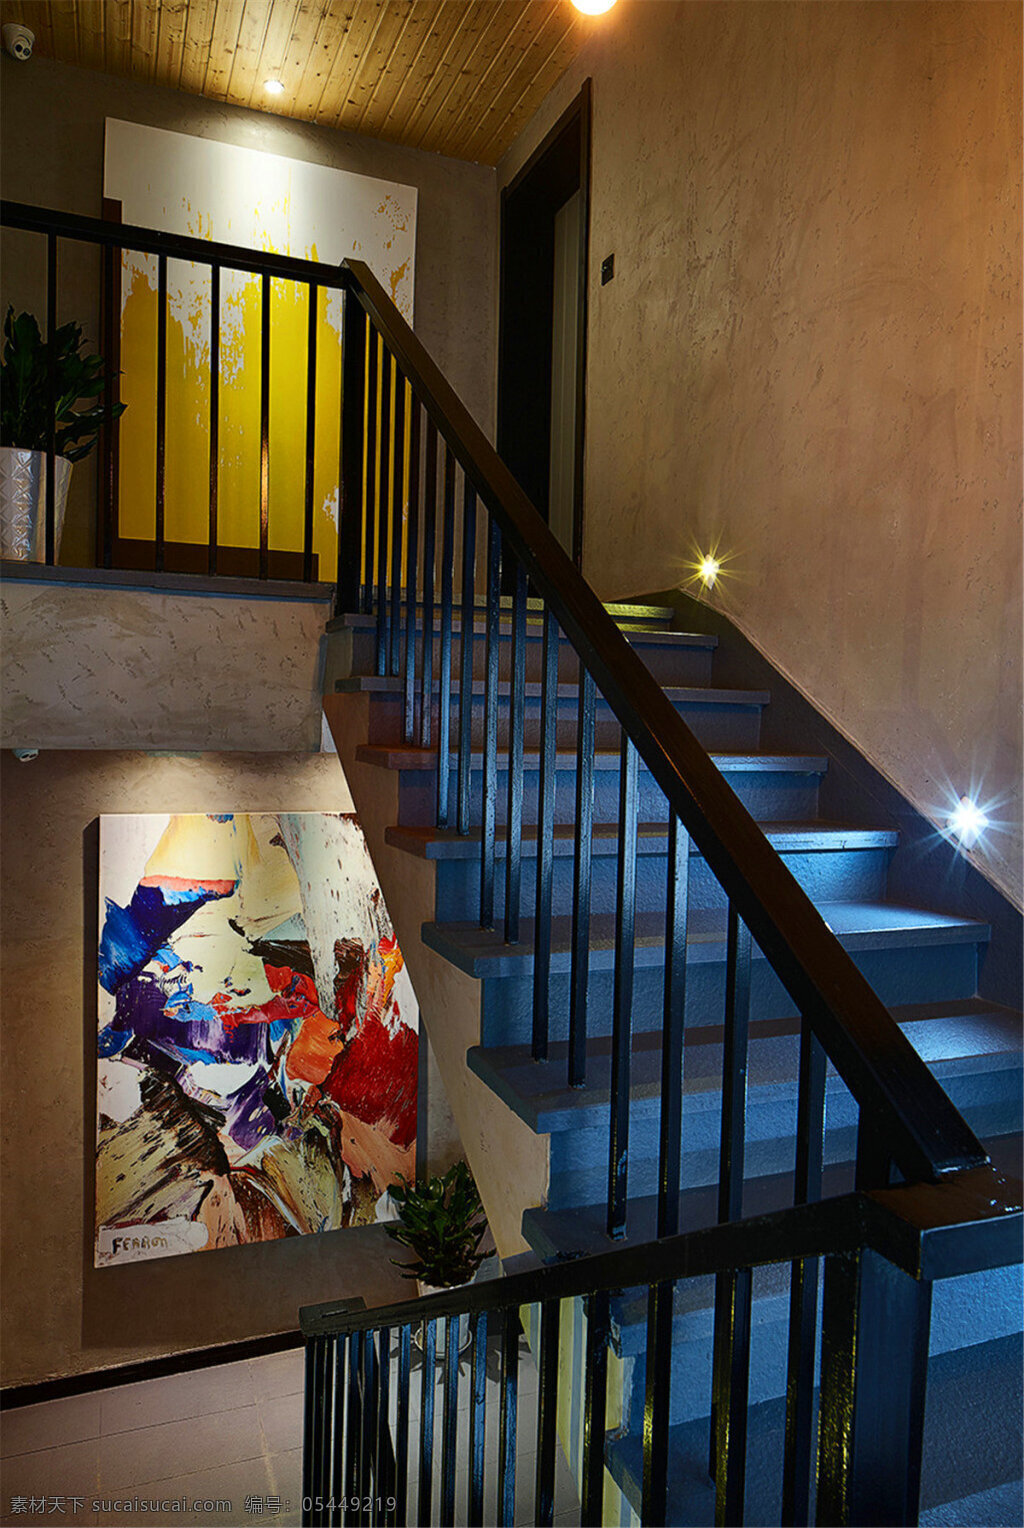 现代 时尚 客厅 木制 扶手 室内装修 效果图 壁灯 客厅装修 蓝色楼梯 木制背景墙